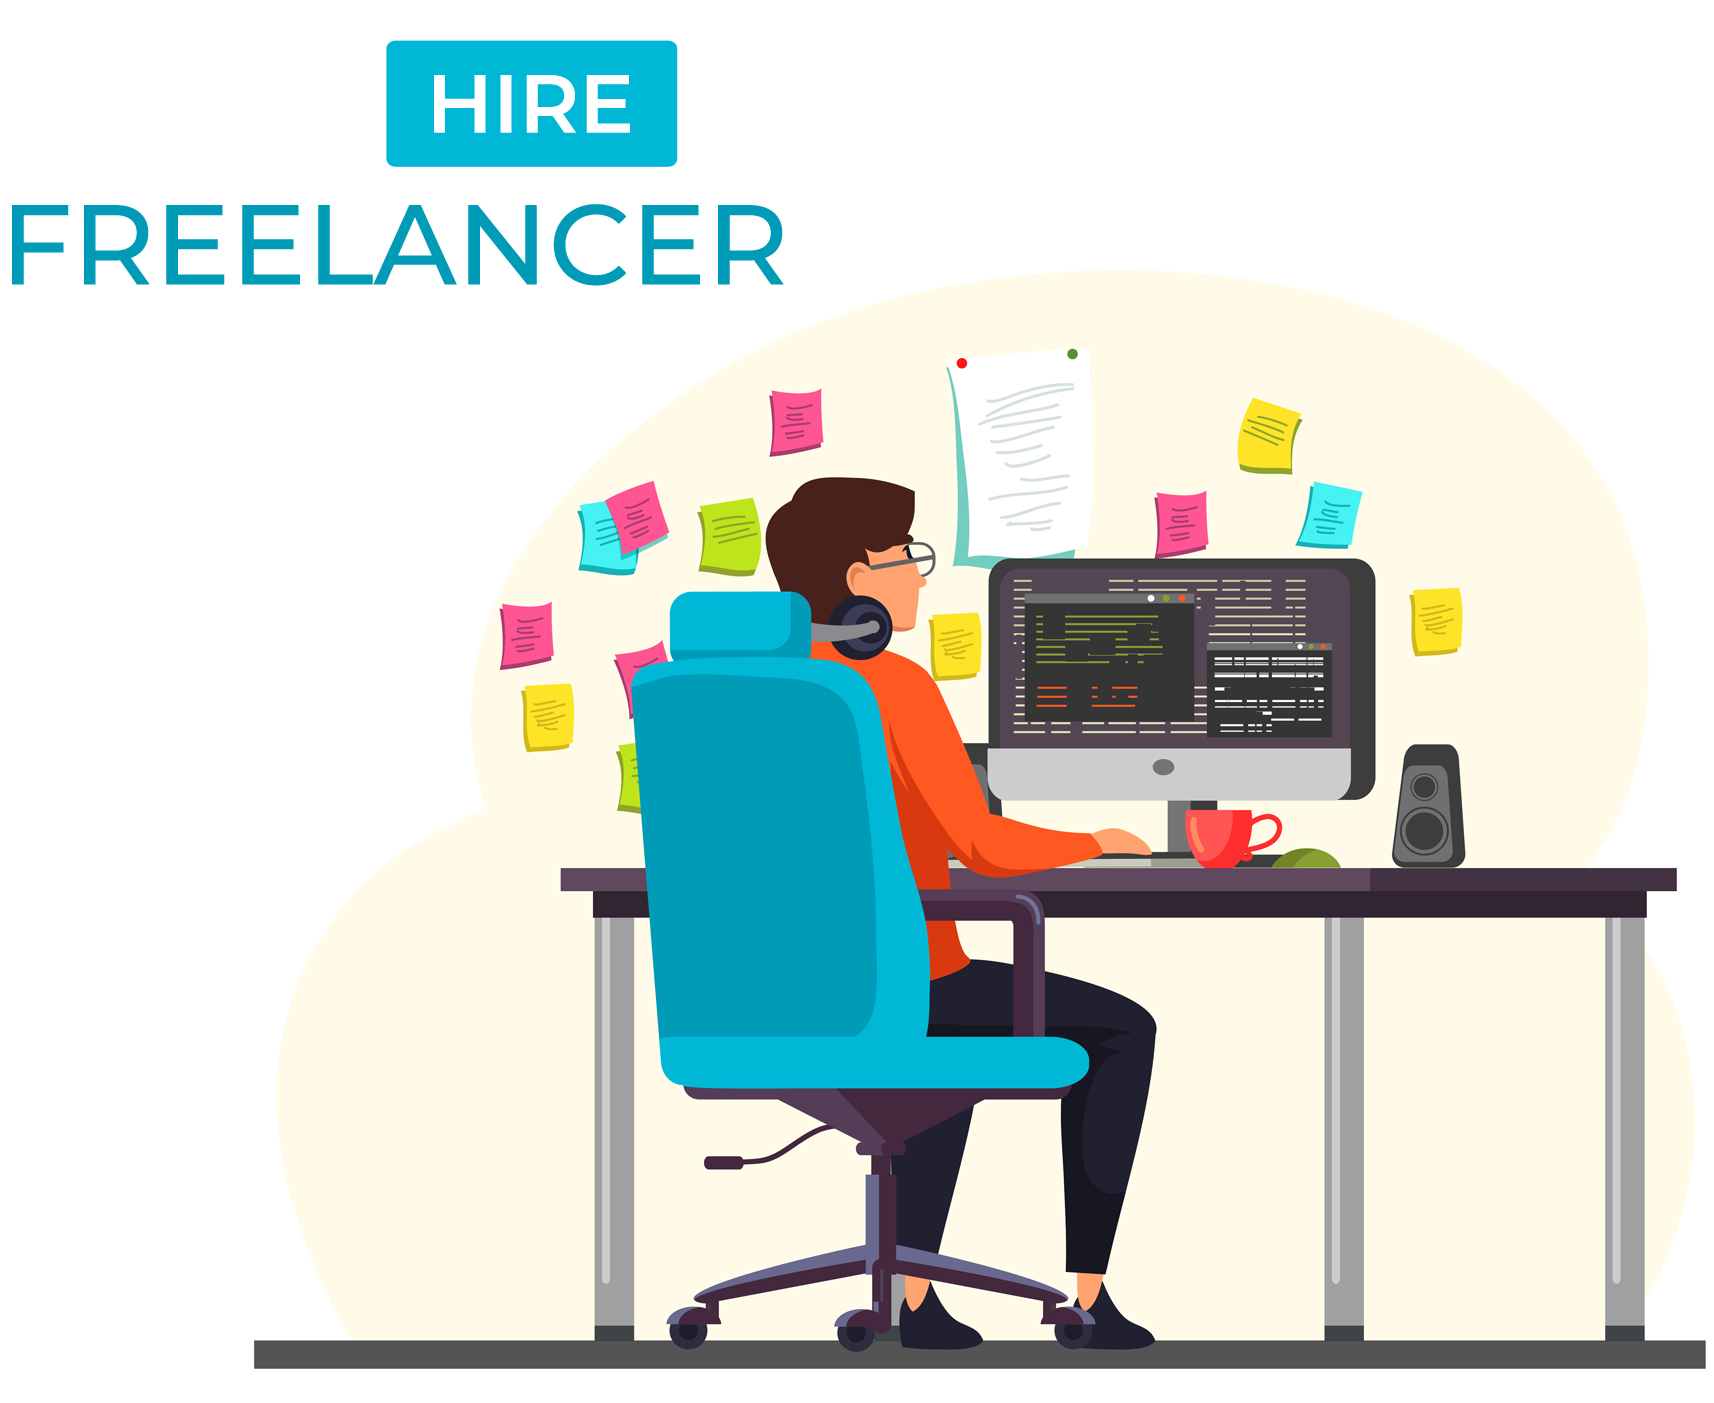 hire freelance image